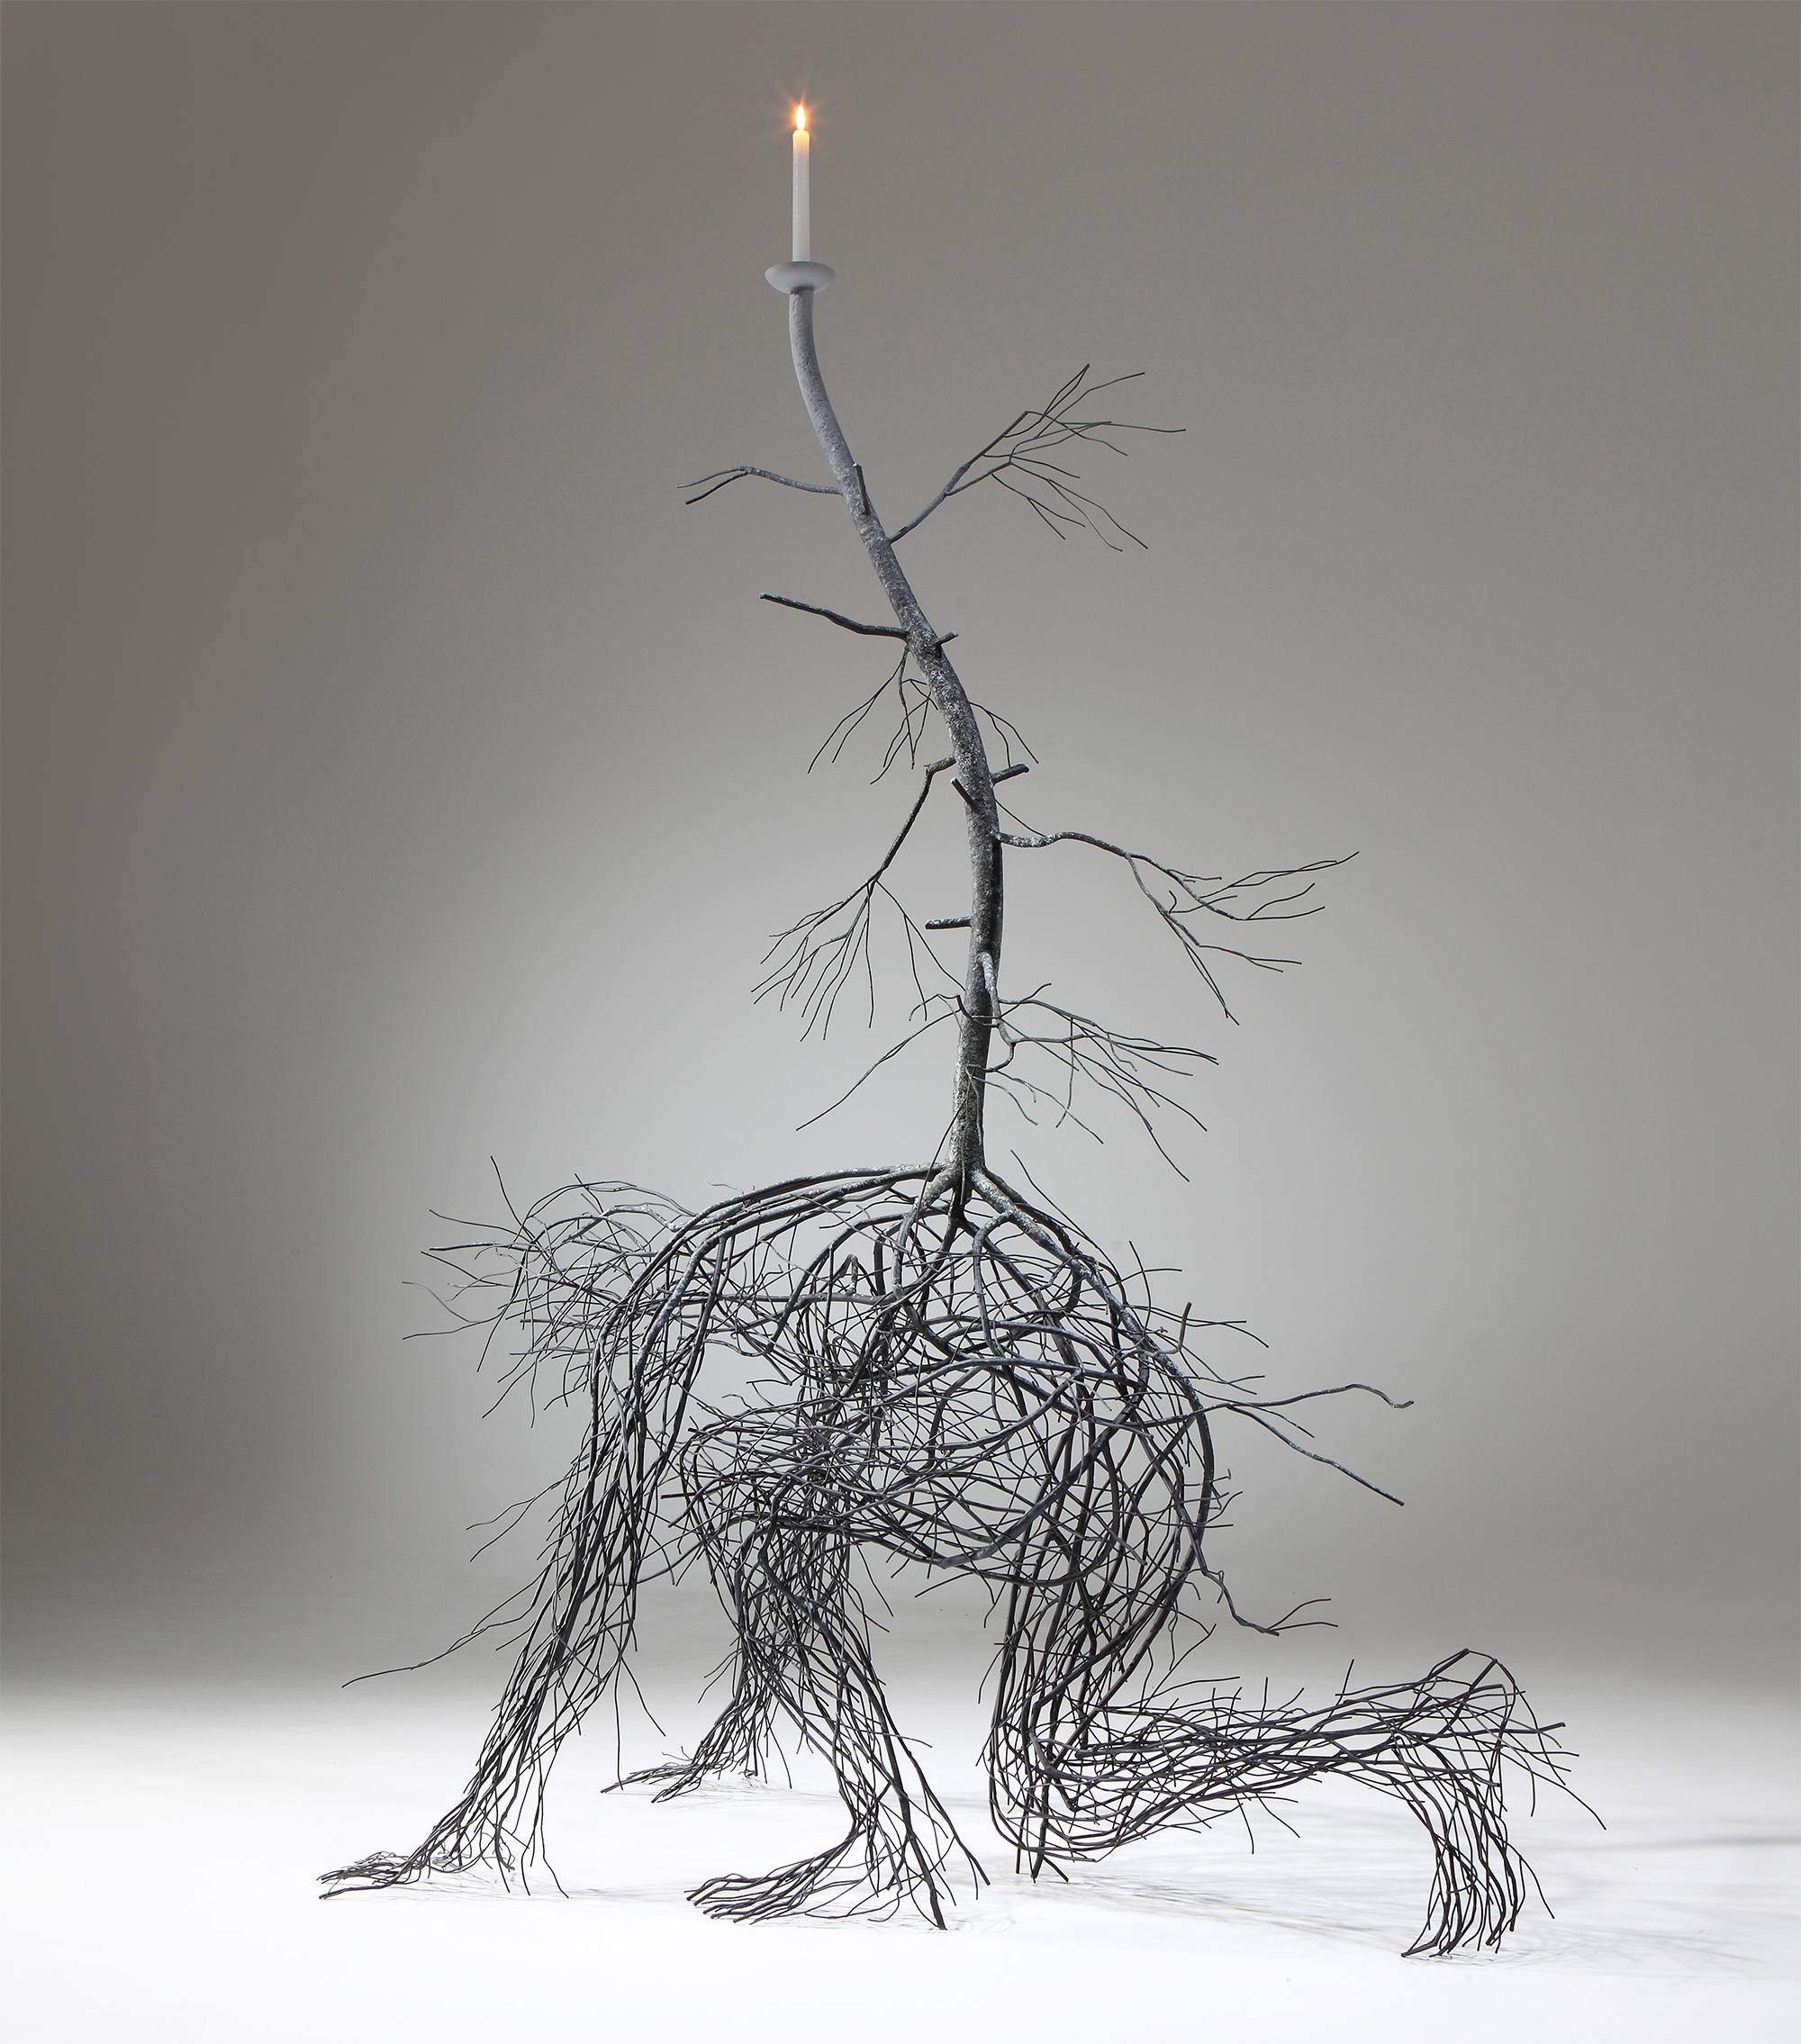 Stainless Steel Roots Sprawl Into Figurative Sculptures by Artist Sun-Hyuk Kim | 国外美陈 美陈网站 美陈前沿 